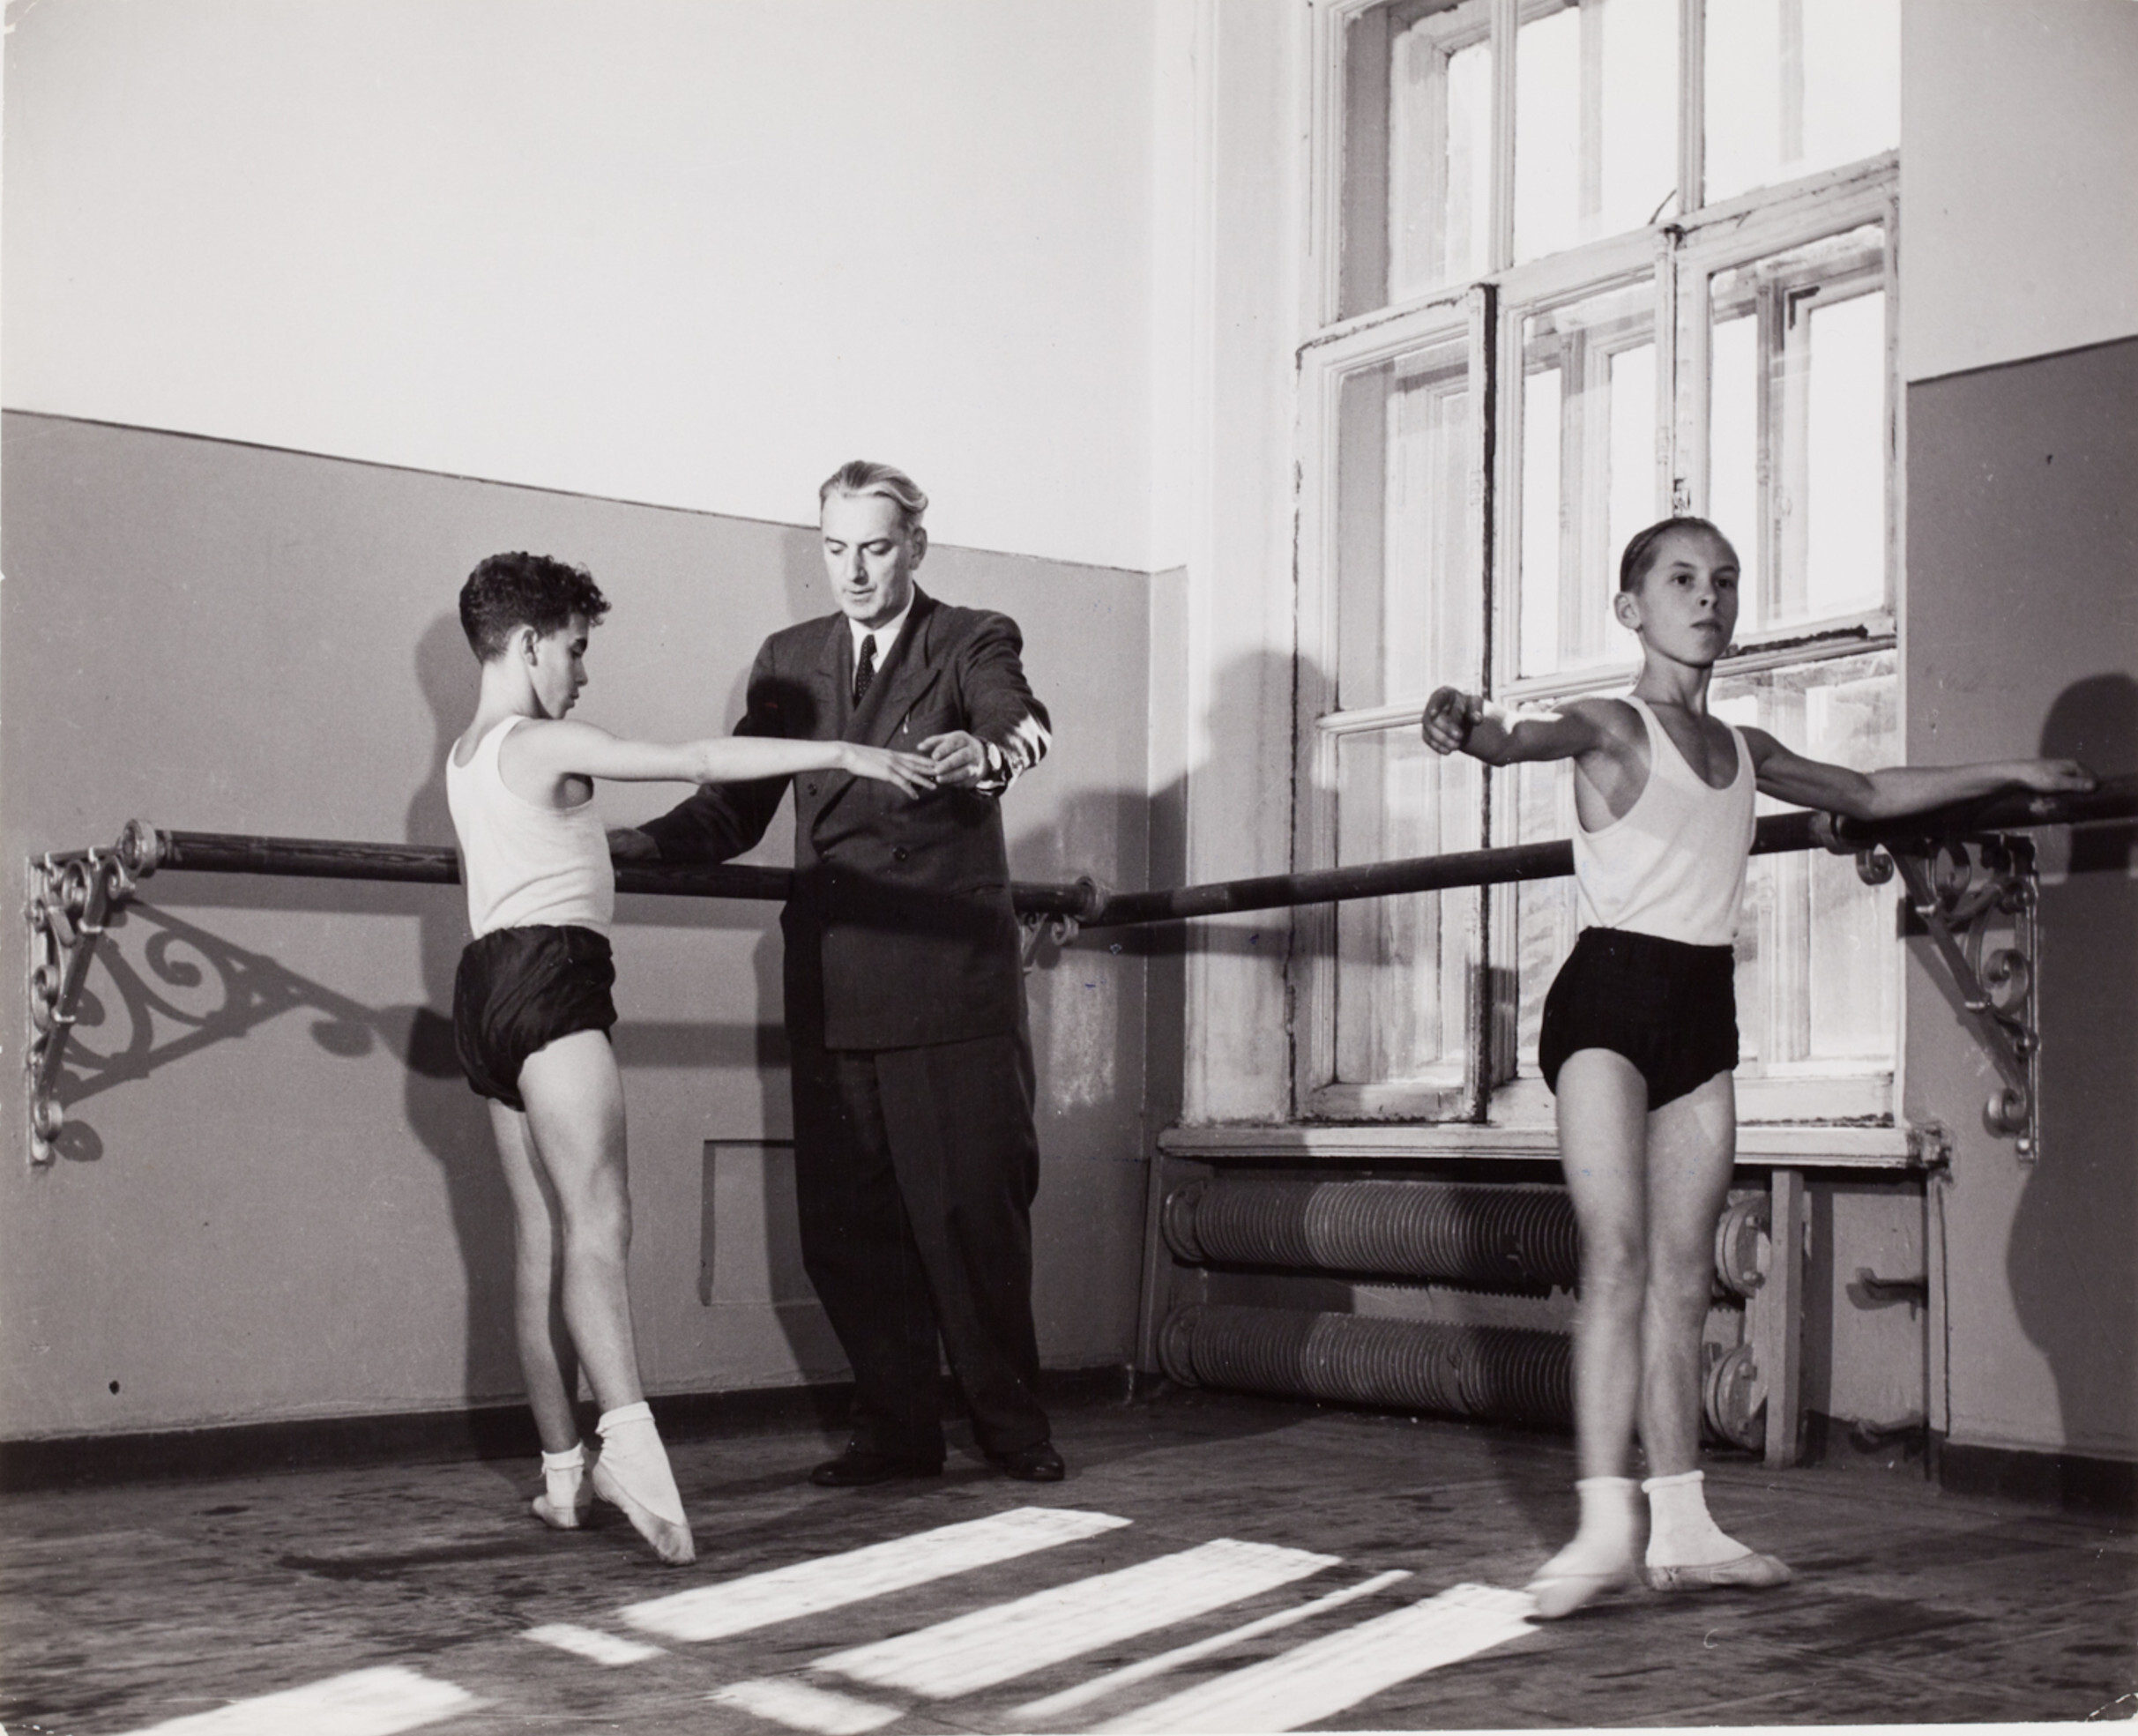 Мальчики и преподаватель во время урока балета, Москва, 1947 год. Фотограф Роберт Капа